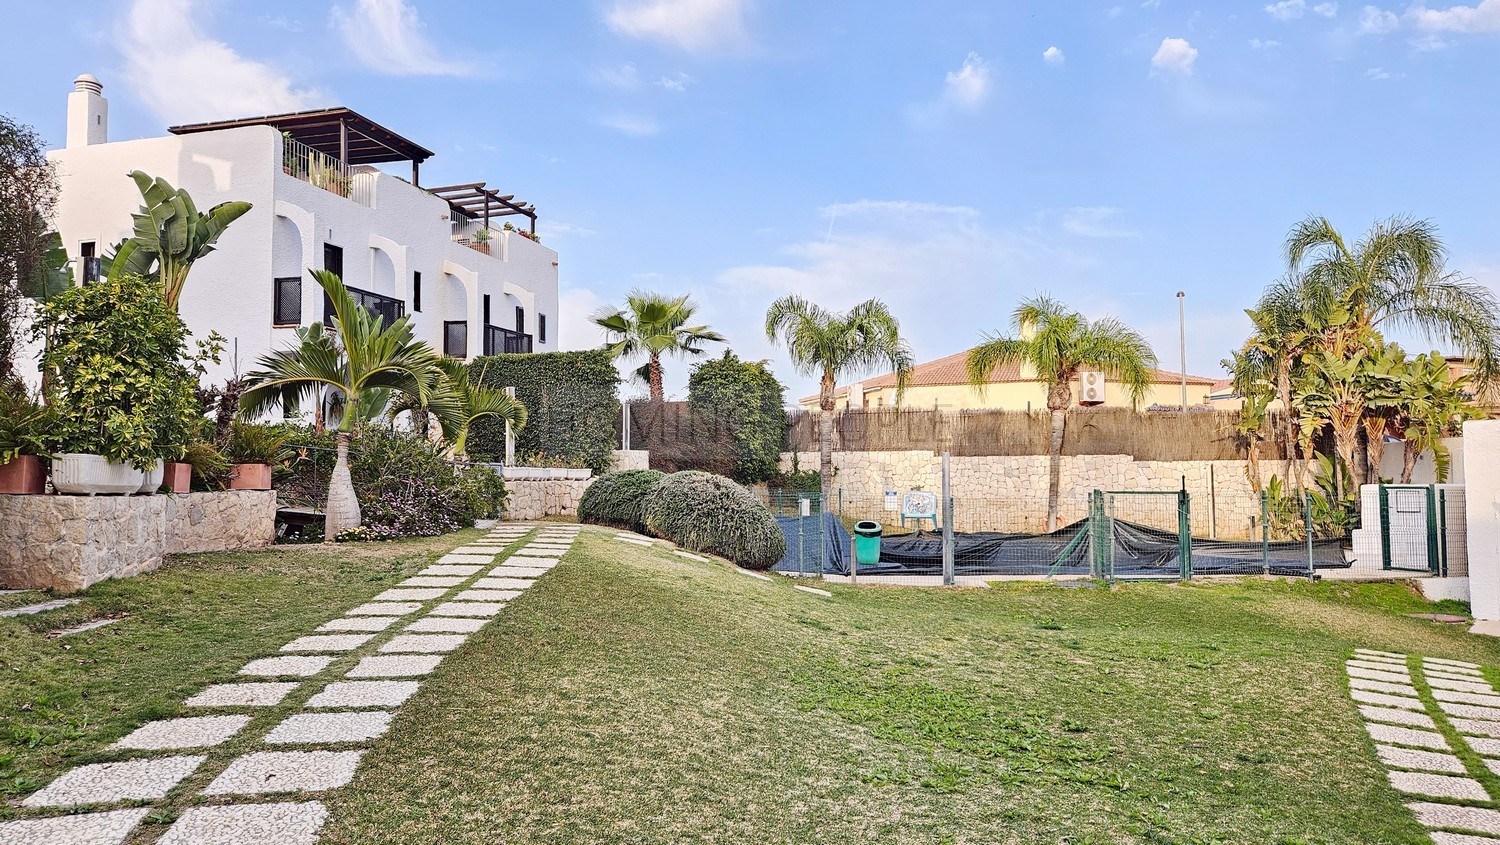 Maison jumelée avec petit jardin, solarium et deux places de parking dans un complexe résidentiel avec piscine et jardins, à seulement 400 m. de la plage!